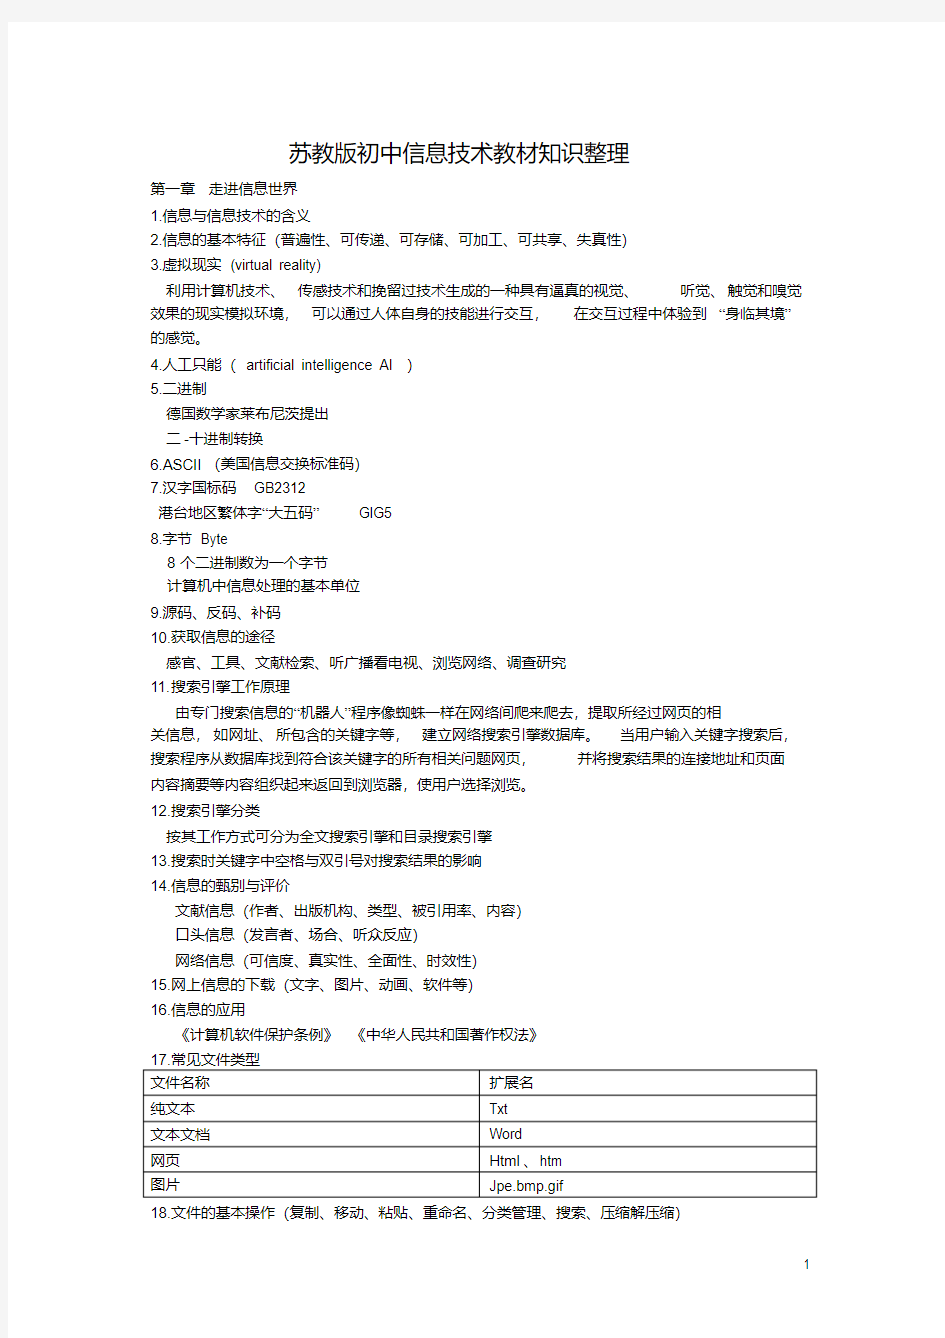 江苏省高中信息技术基本功比赛知识点整理.pdf